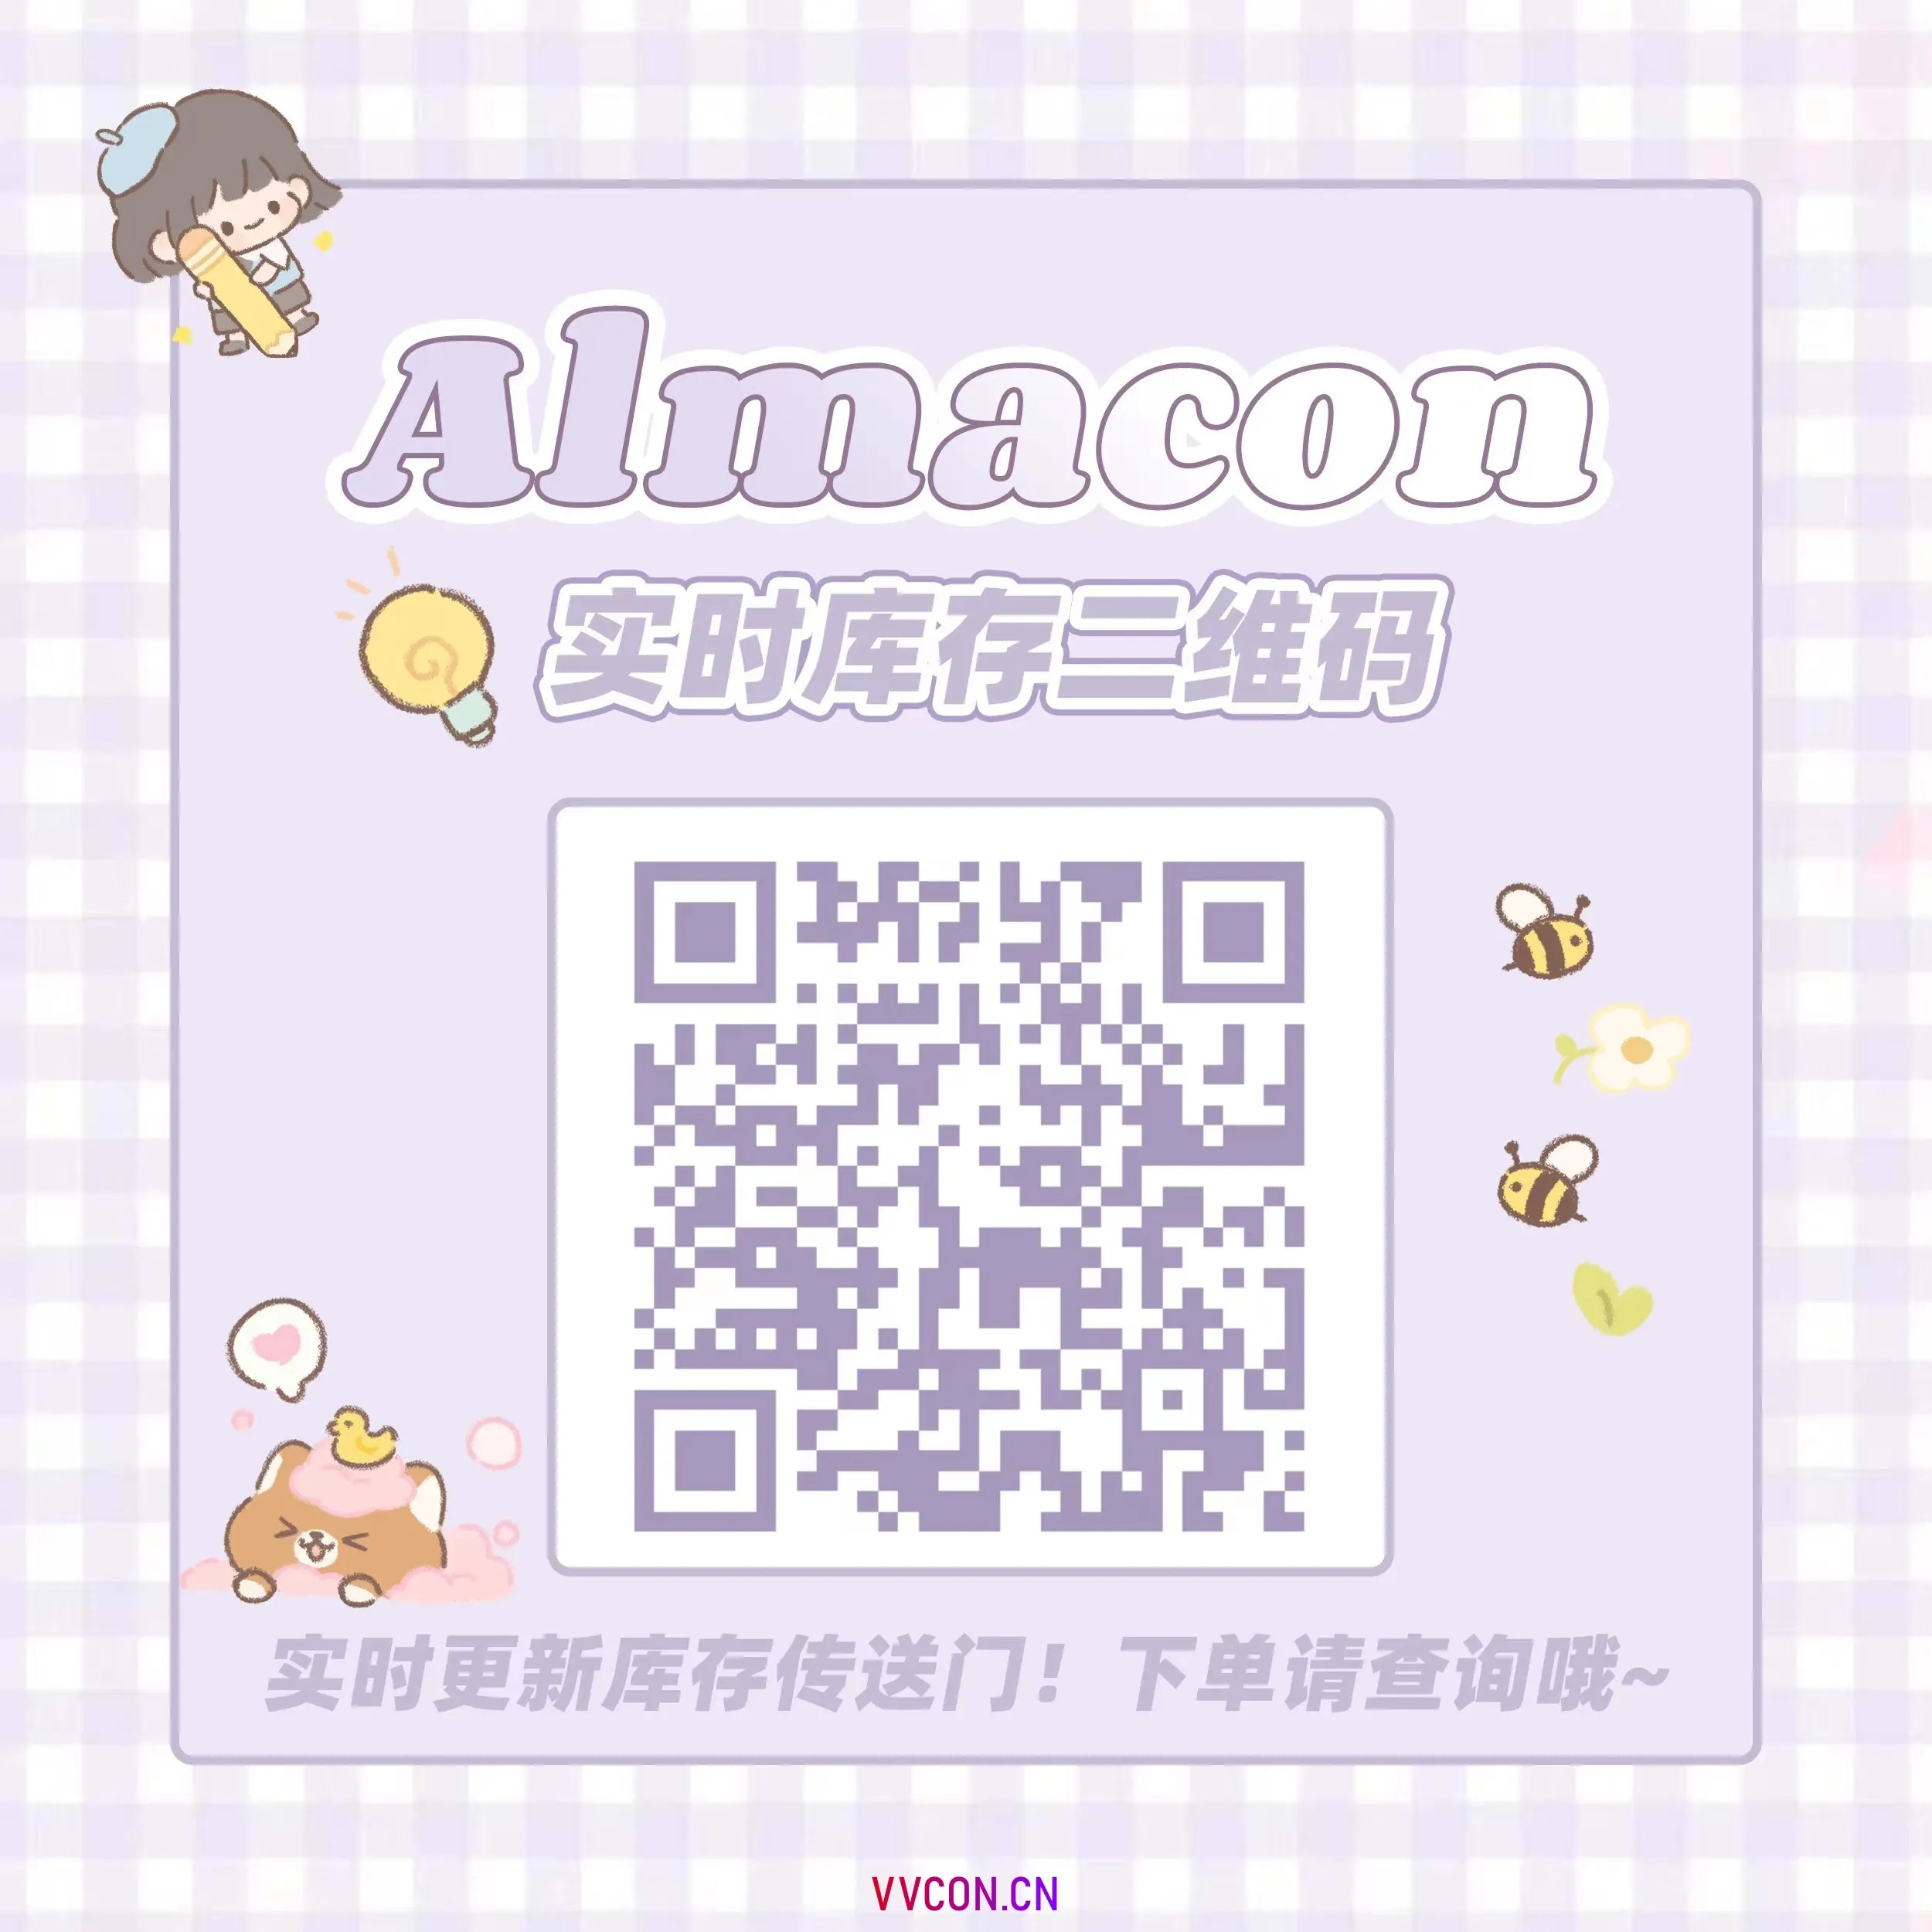 Almacon 暑期特惠 夏日专属福利 - VVCON美瞳网